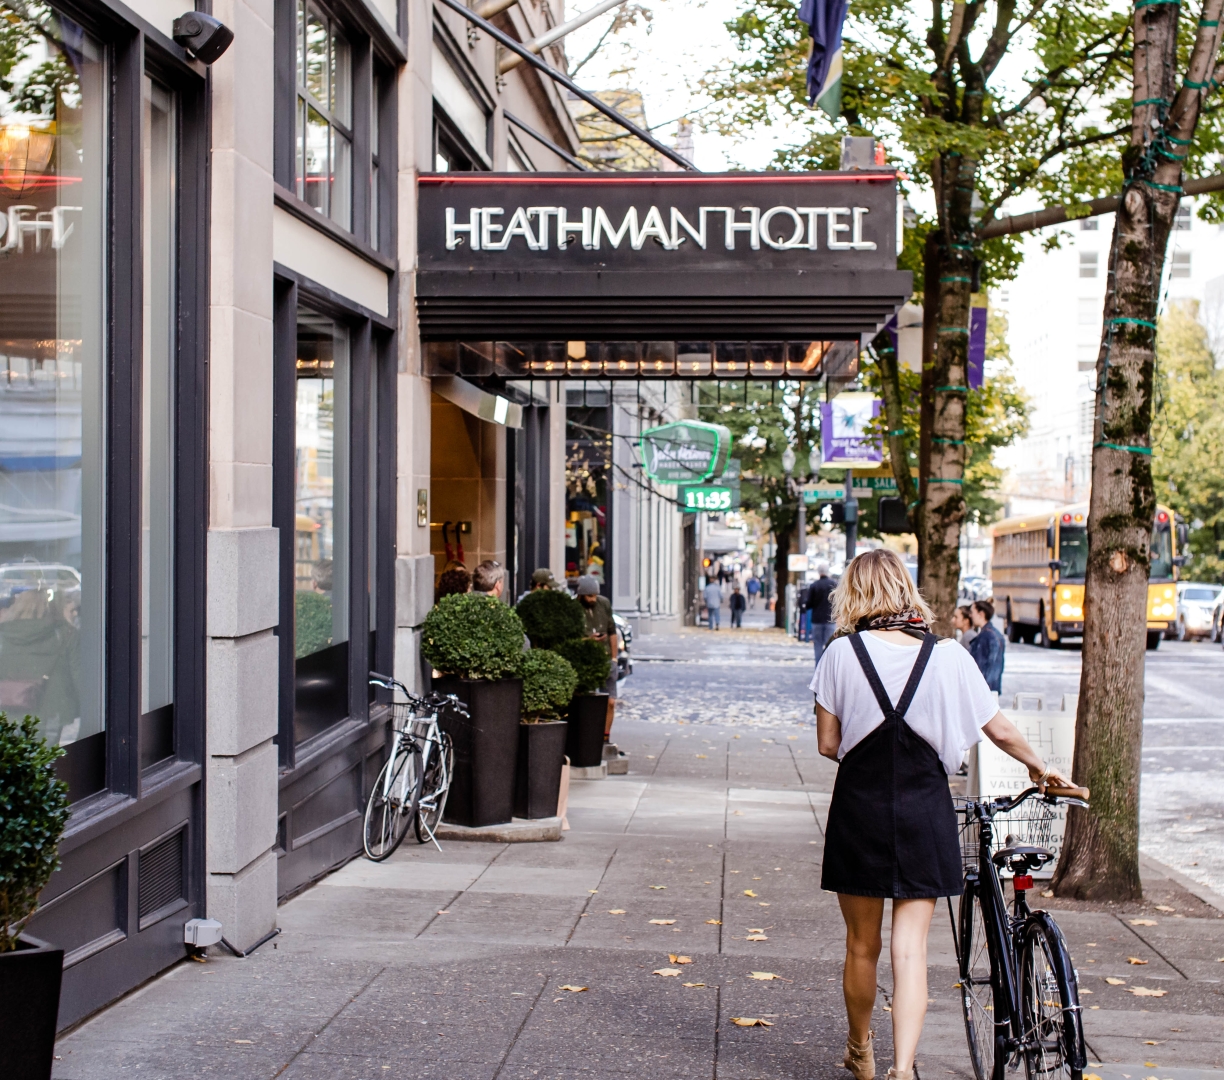 A woman walking a bike on the sidewalk by the Heathman Hotel.